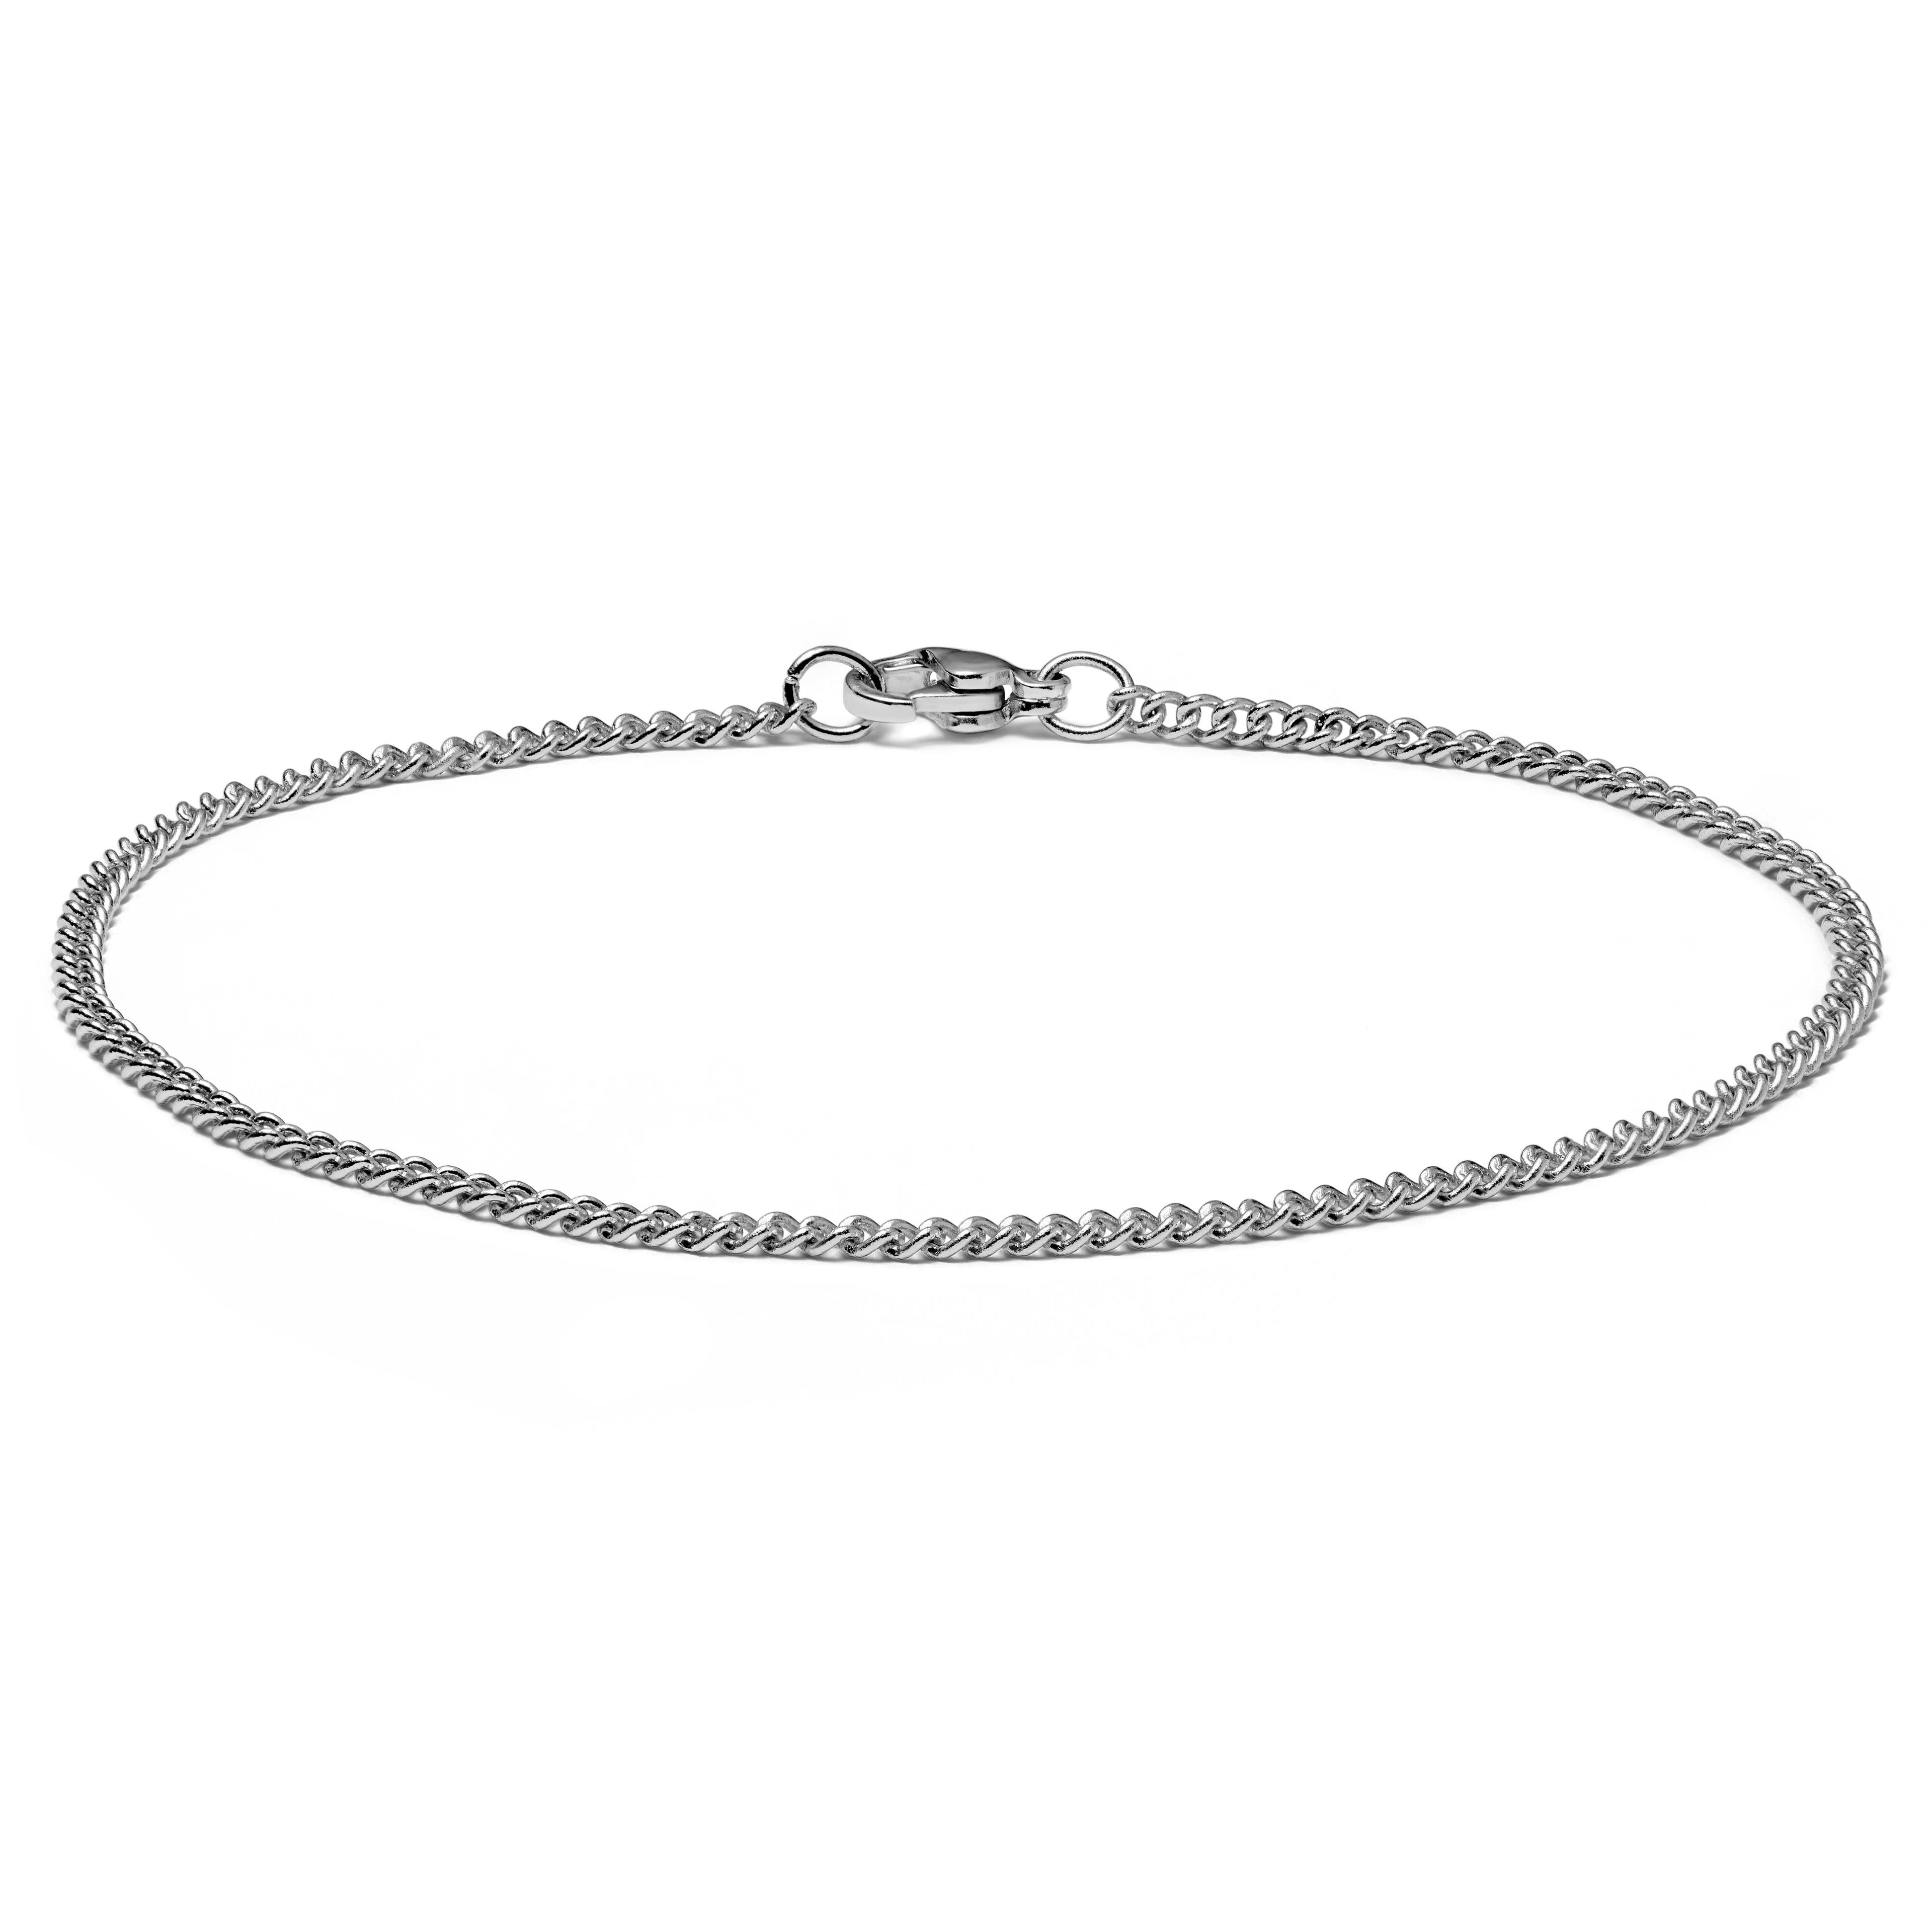 Bracelet chaîne à mailles argentées  - 2 mm